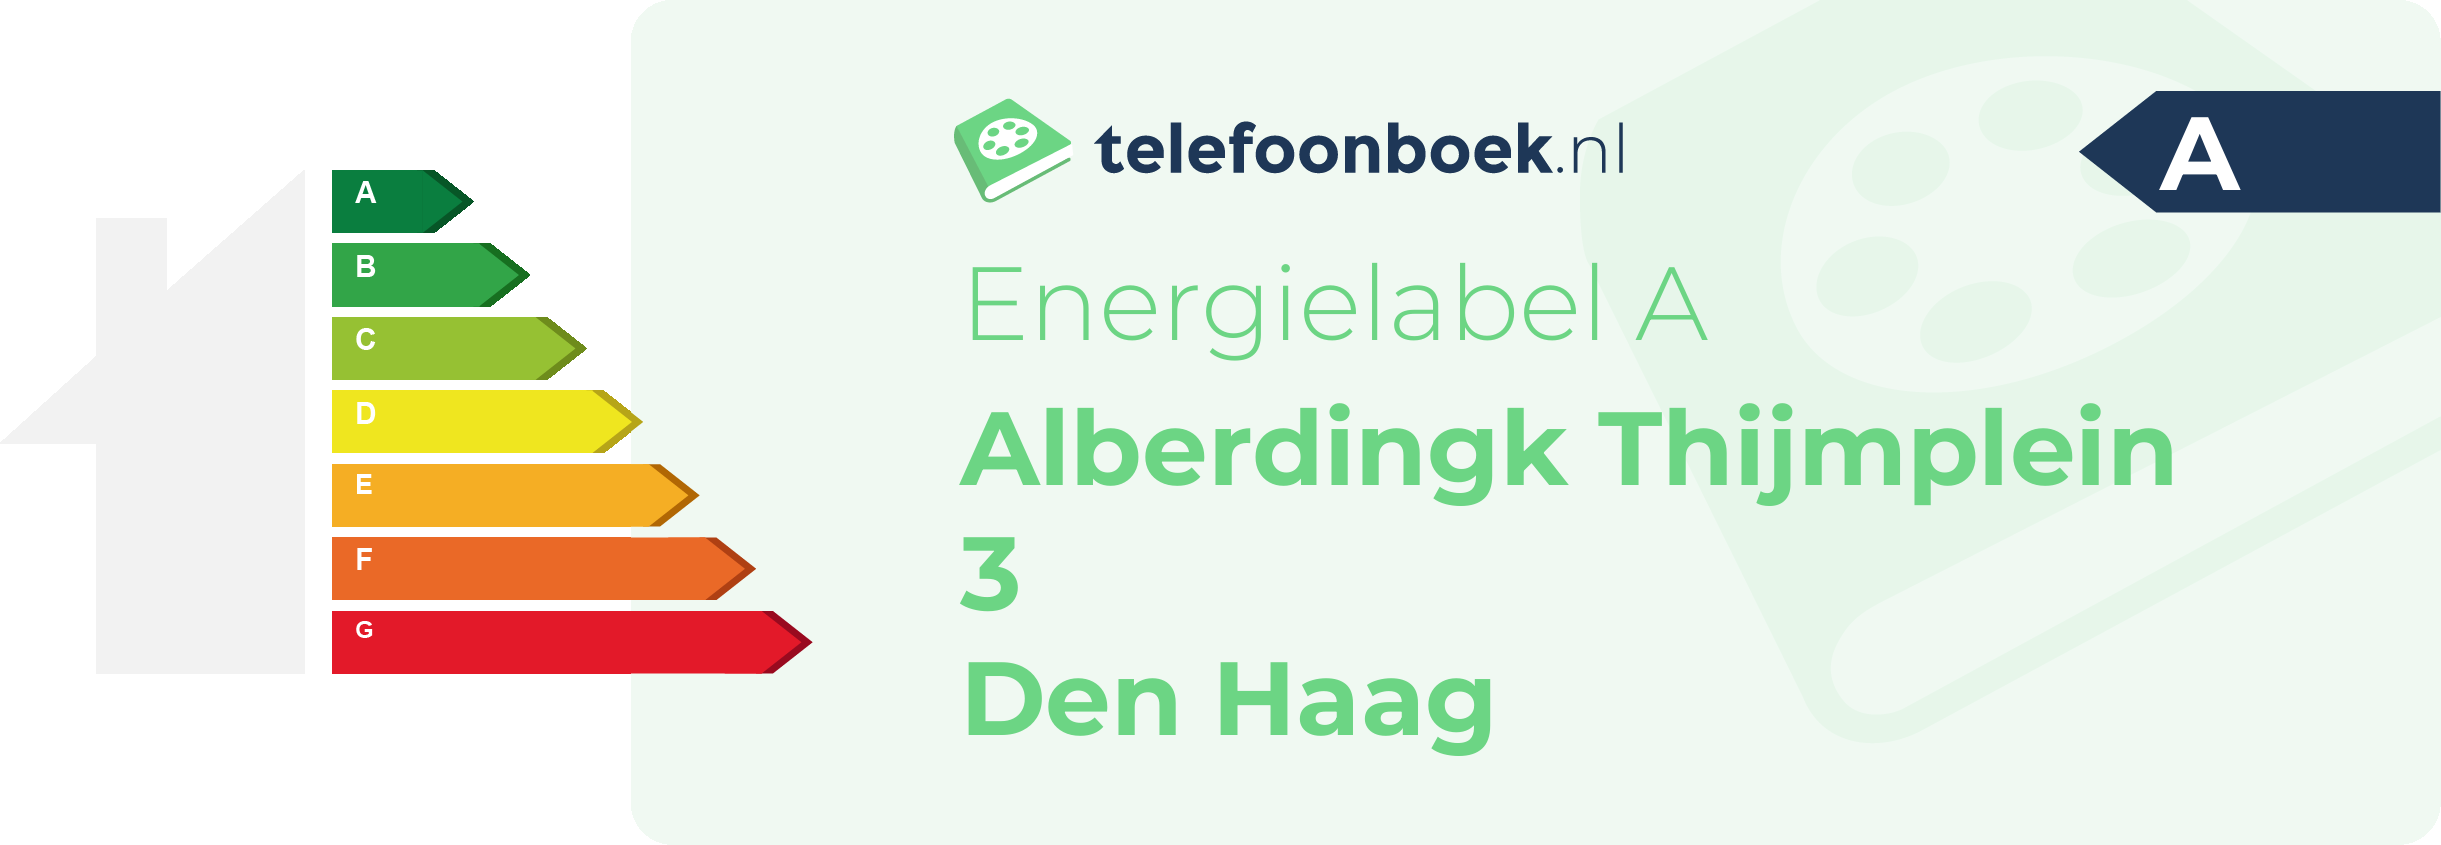 Energielabel Alberdingk Thijmplein 3 Den Haag